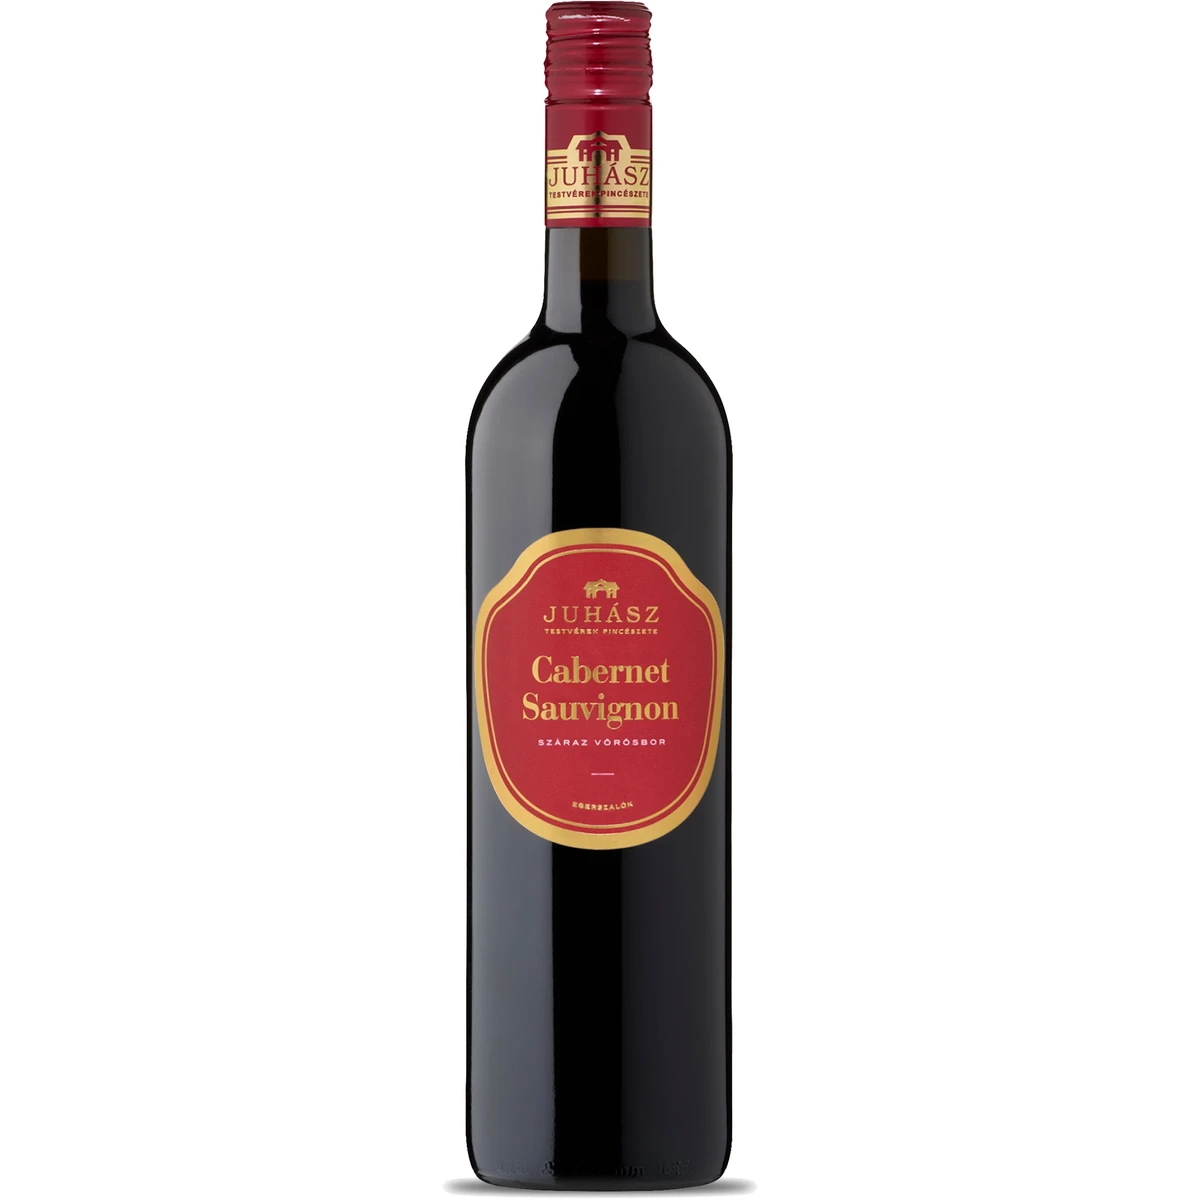 Juhász Felső Magyarországi Cabernet Sauvignon száraz vörösbor 13,5% 750 ml